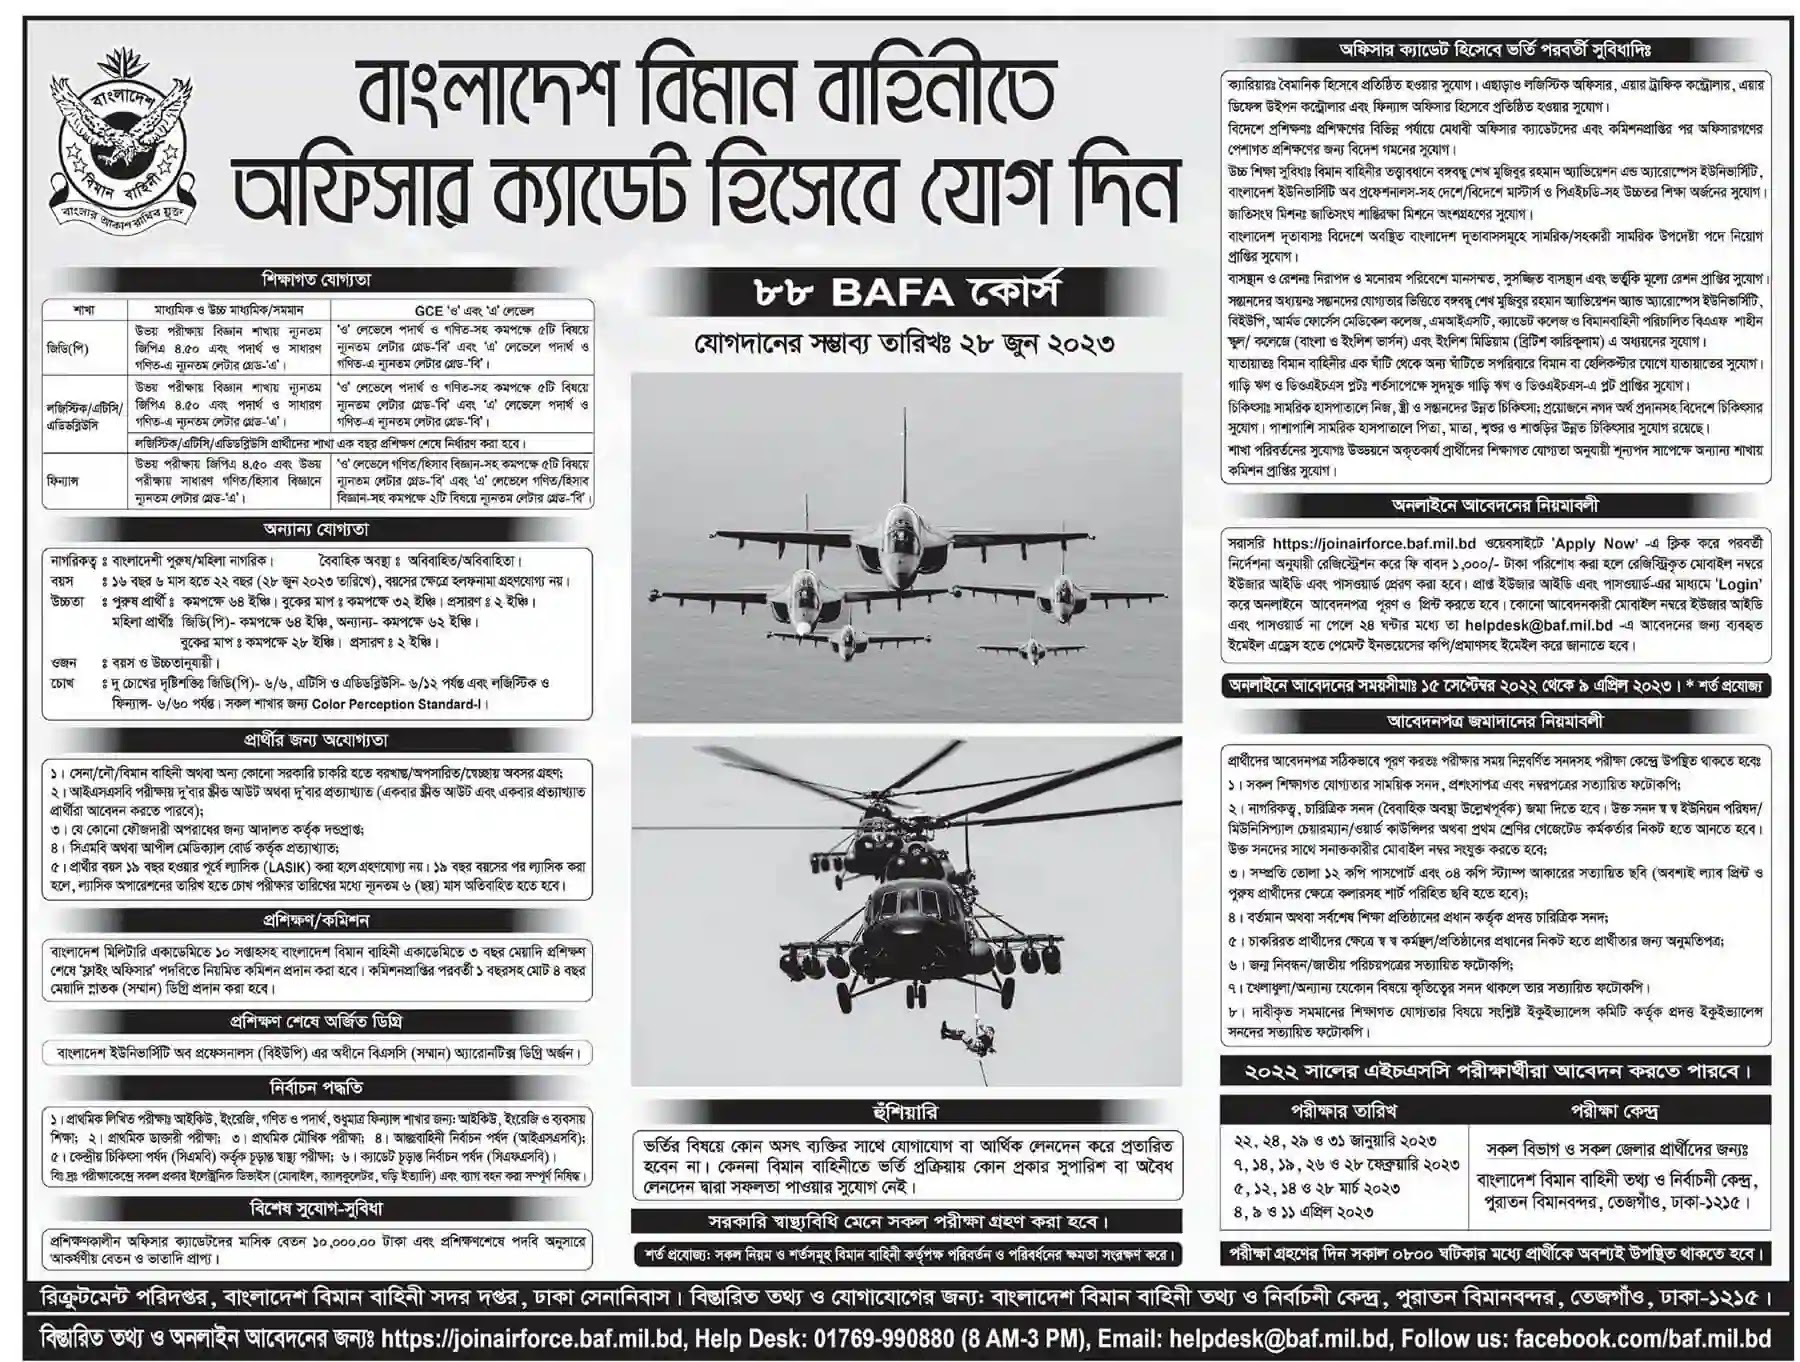 বাংলাদেশ বিমান বাহিনী নিয়োগ বিজ্ঞপ্তি ২০২২ (৮৮ BAFA কোর্স) Bangladesh Air Force Recruitment Circular 2022 (88 BAFA Courses) || https://joinairforce.baf.mil.bd